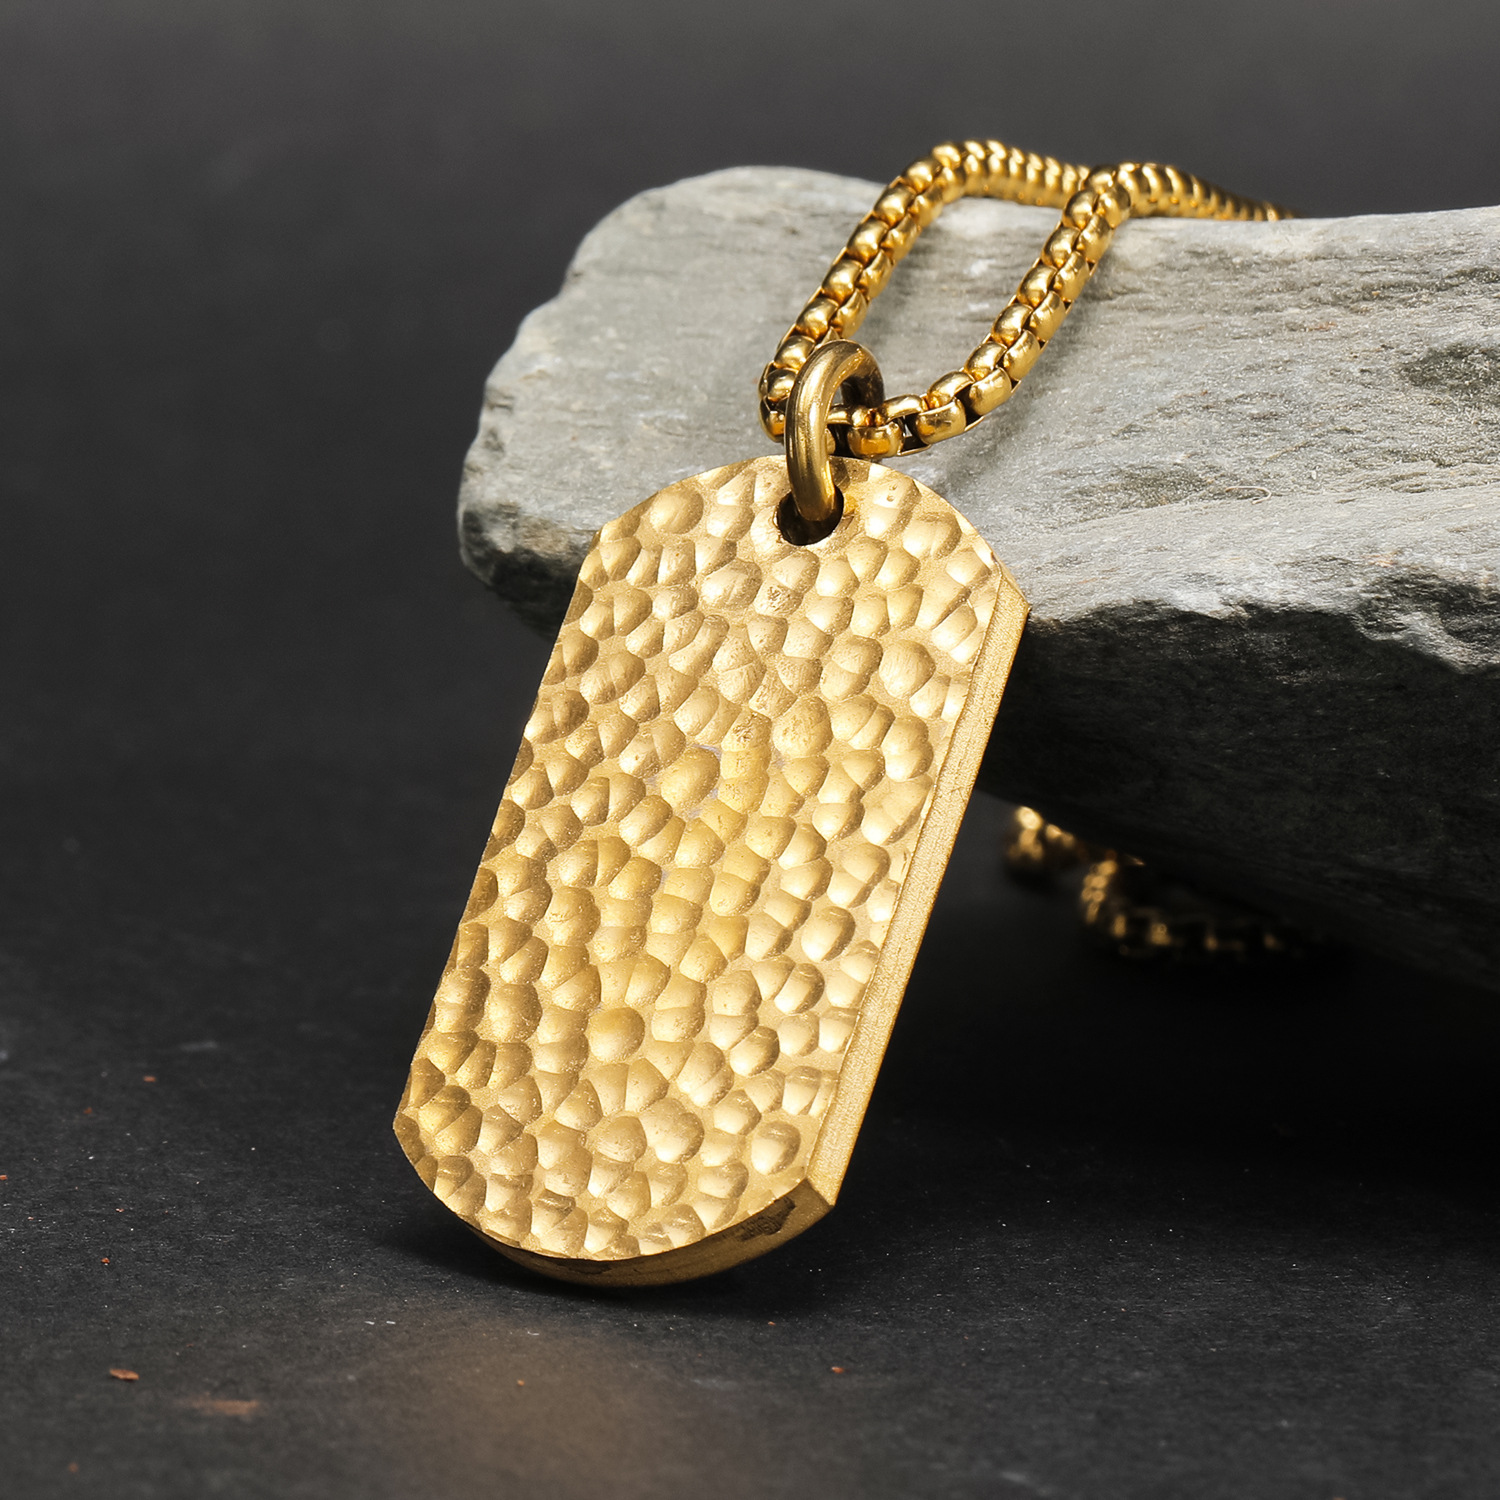 Gold pendant, no chain